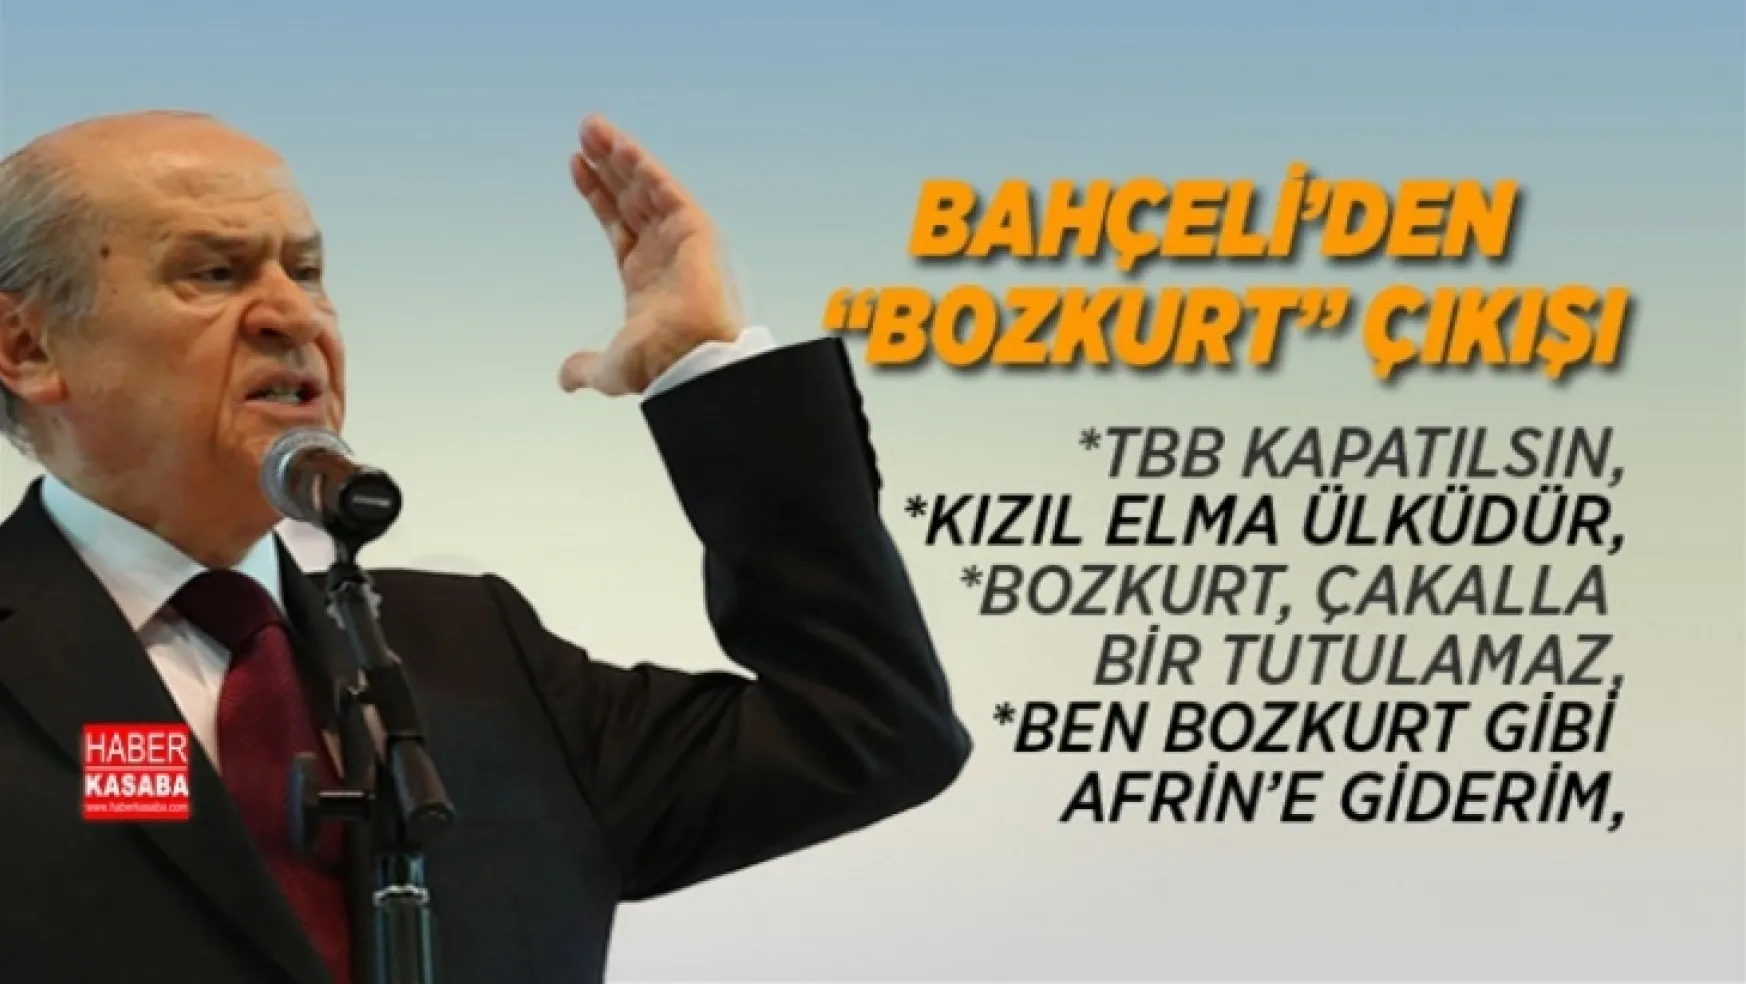 MHP Lideri Bahçeli'den 'Bozkurt' çıkışı